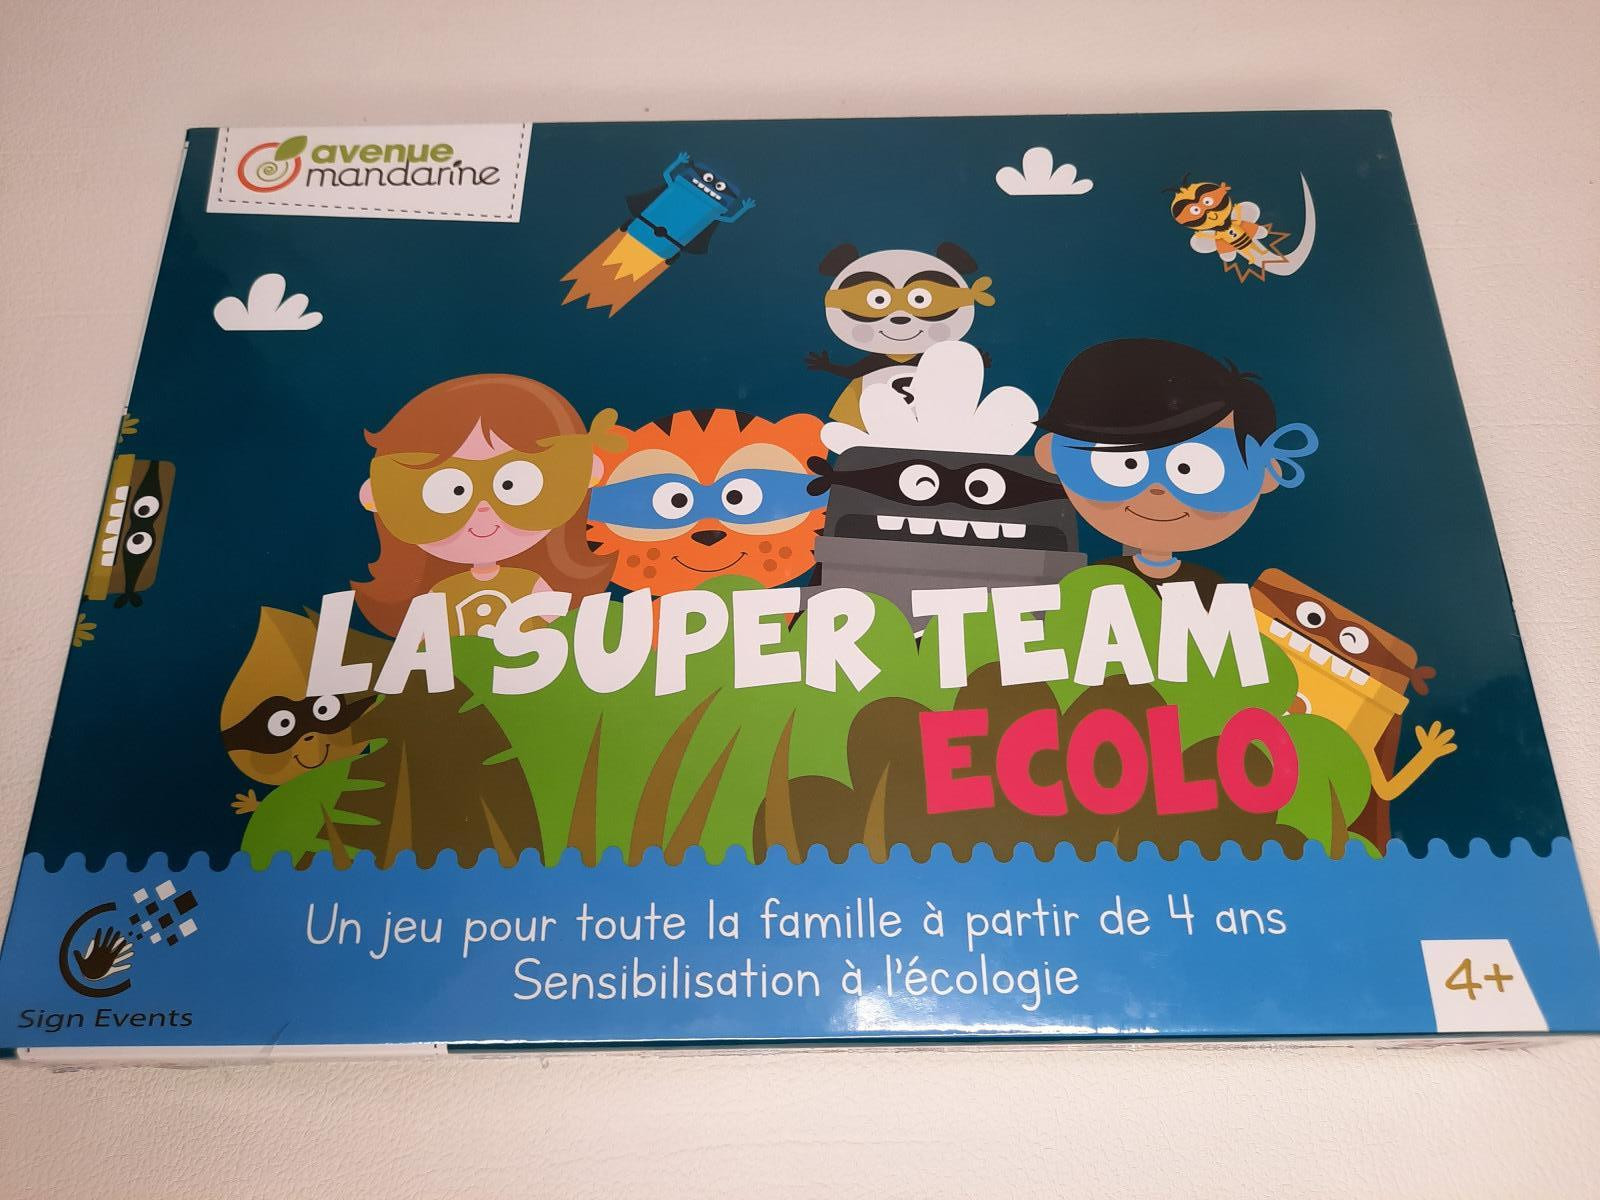 La super team ecolo - Boutique Toup'tibou - photo 6